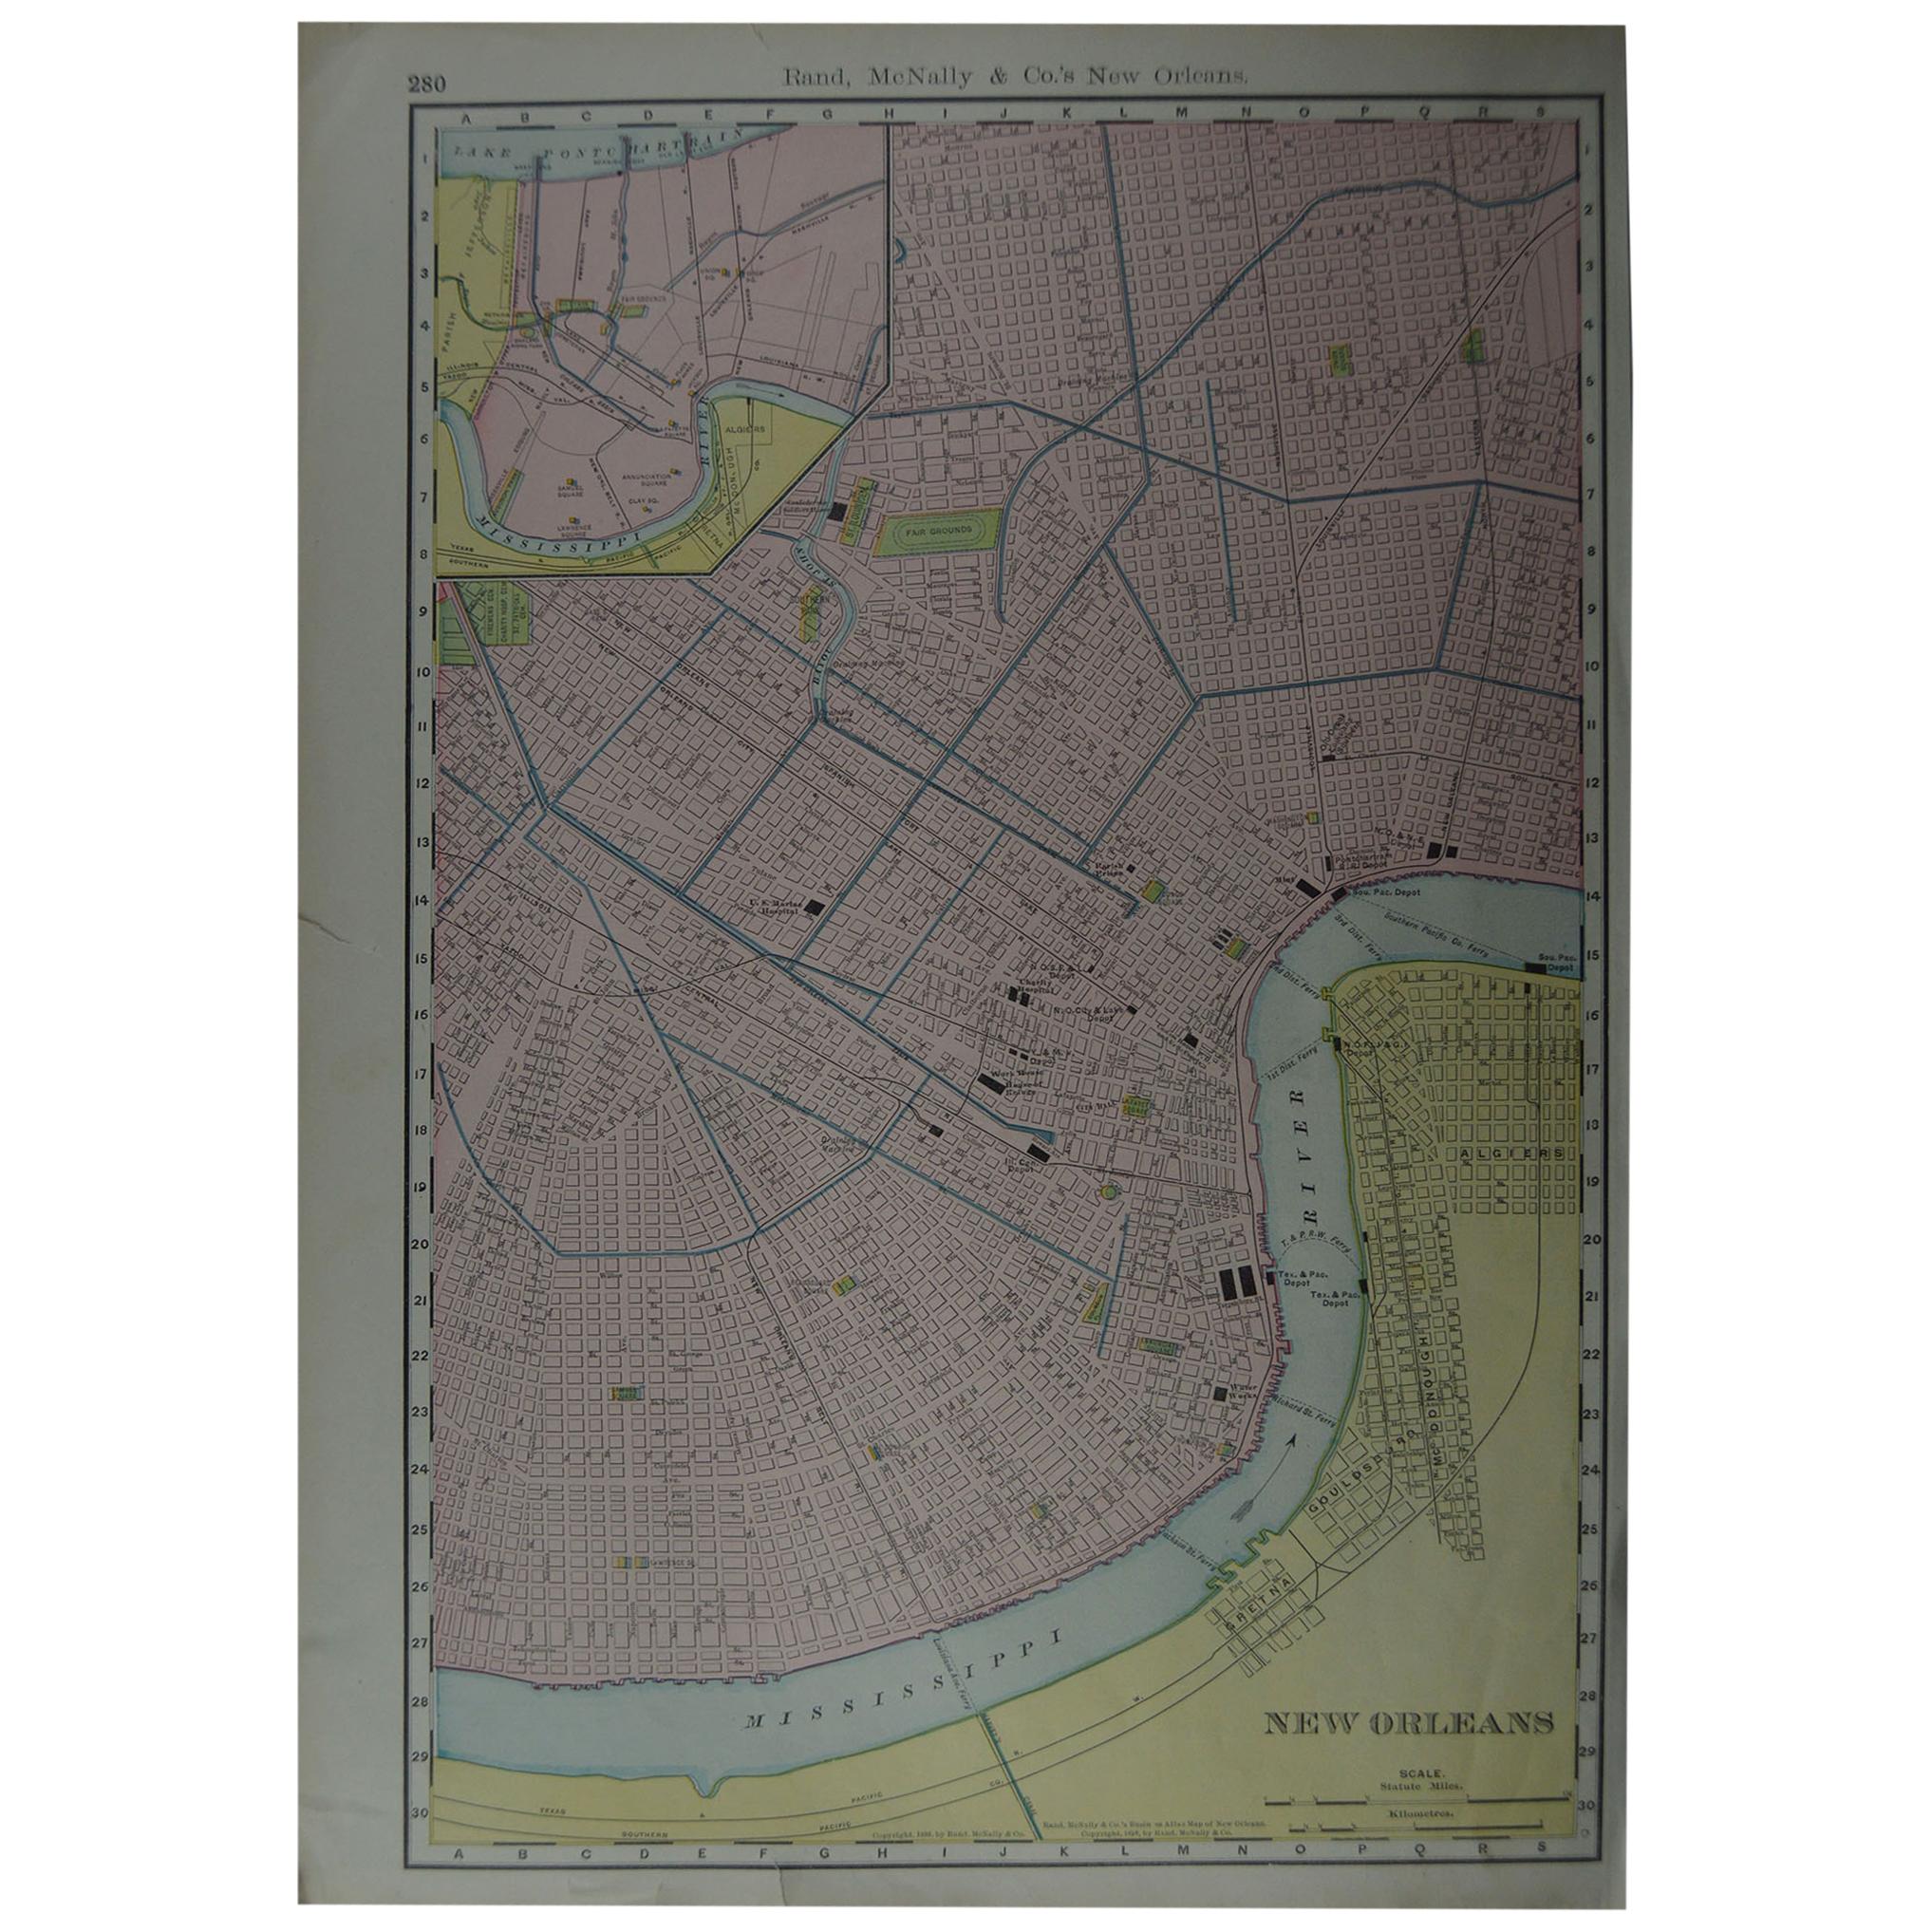 Original Antique City Plan of New Orleans, USA, circa 1900